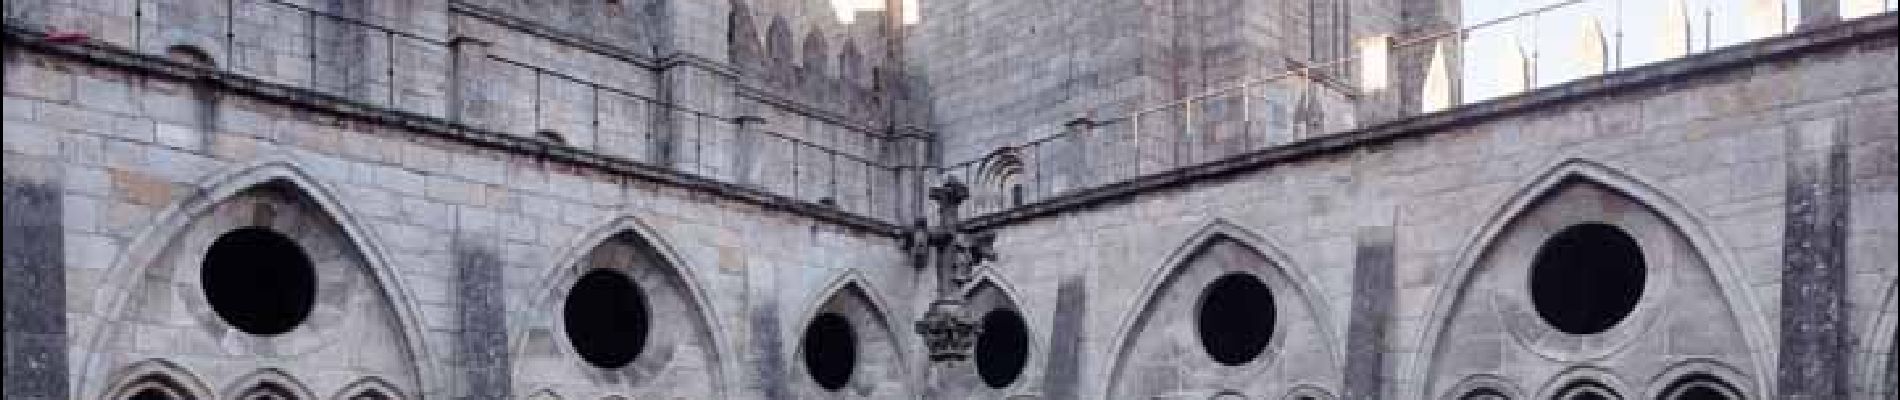 Punto di interesse Cedofeita, Santo Ildefonso, Sé, Miragaia, São Nicolau e Vitória - Sé do Porto (cathedrale) - Photo